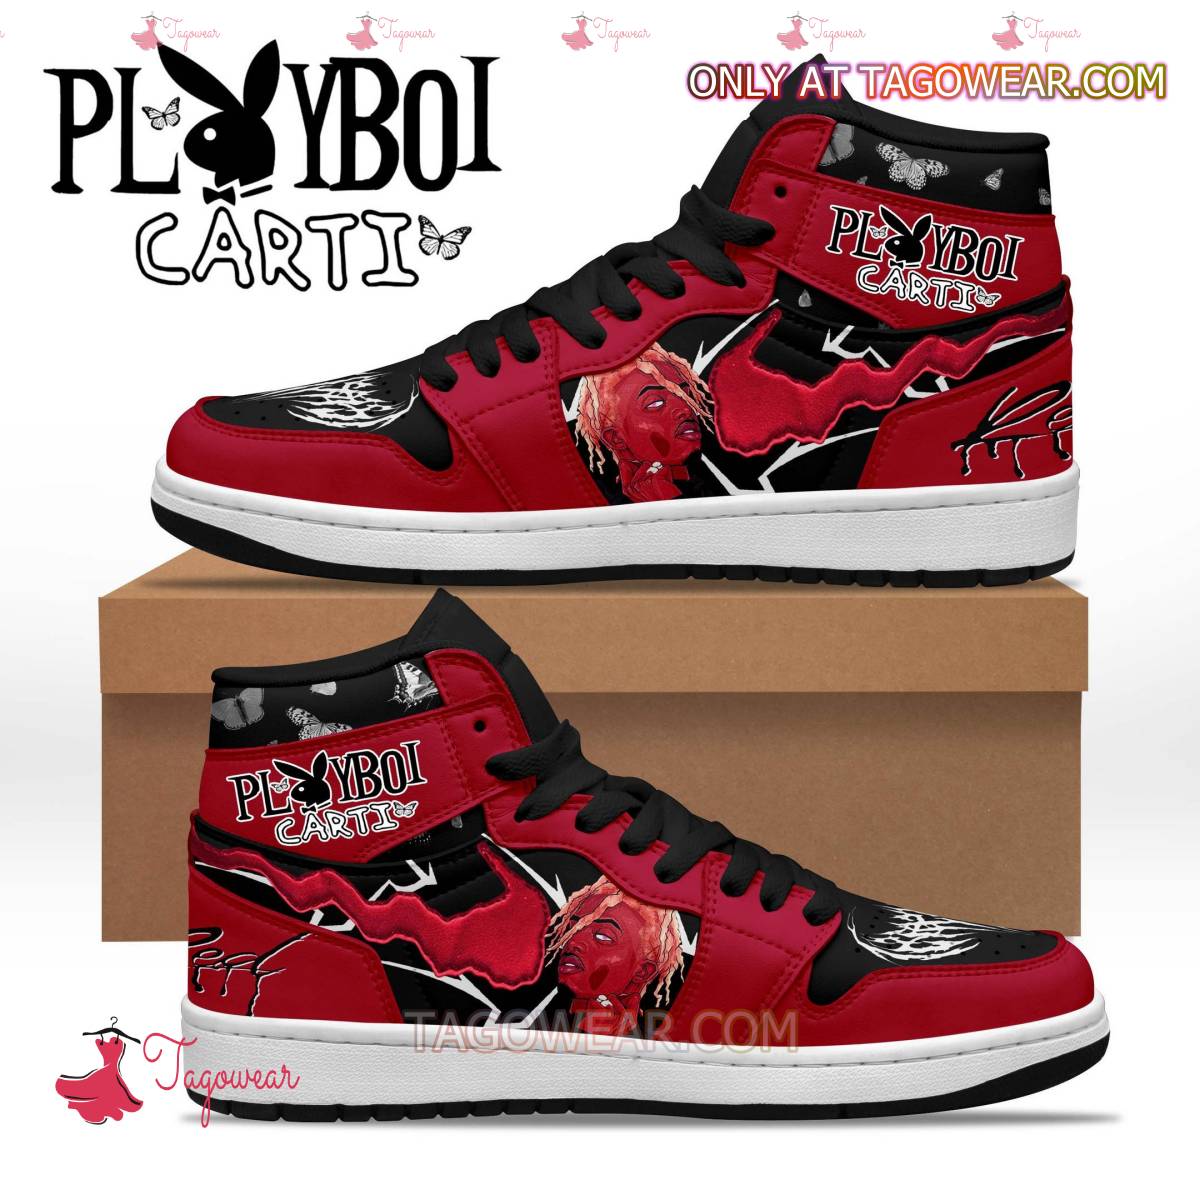 Playboi Carti Whole Lotta Red Air Jordan High Top Shoes